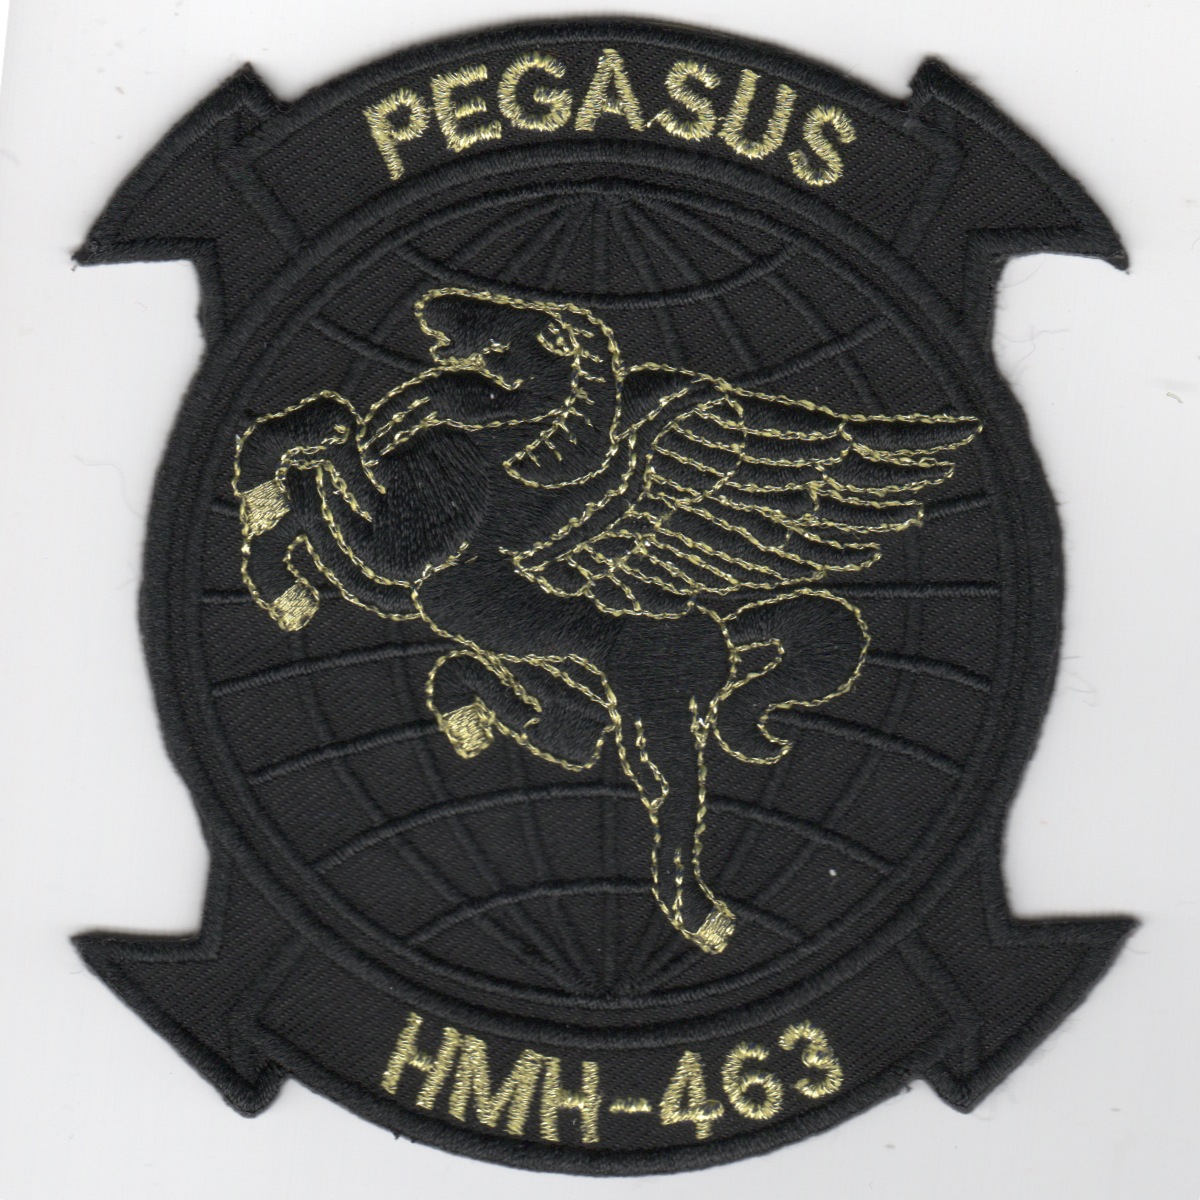 HMH-463 'Pegasus' Patch (Black/Gold Letters)